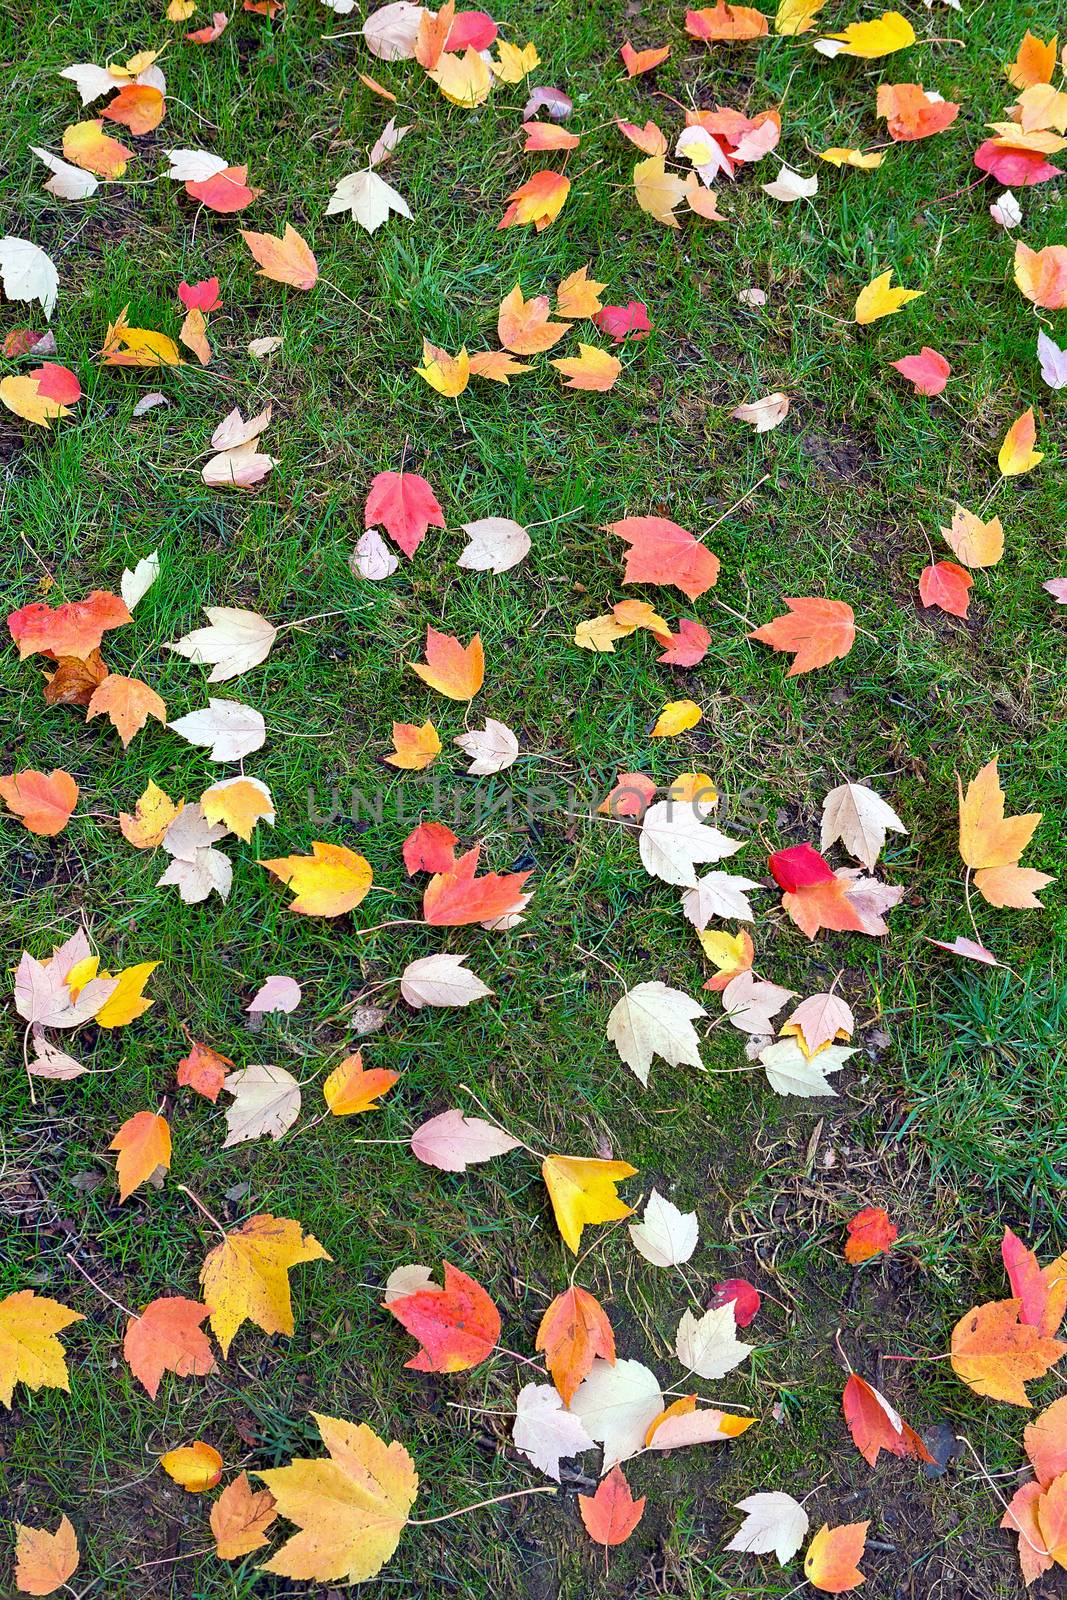 Fall Maple tree leaves on green grass lawn in backyard garden